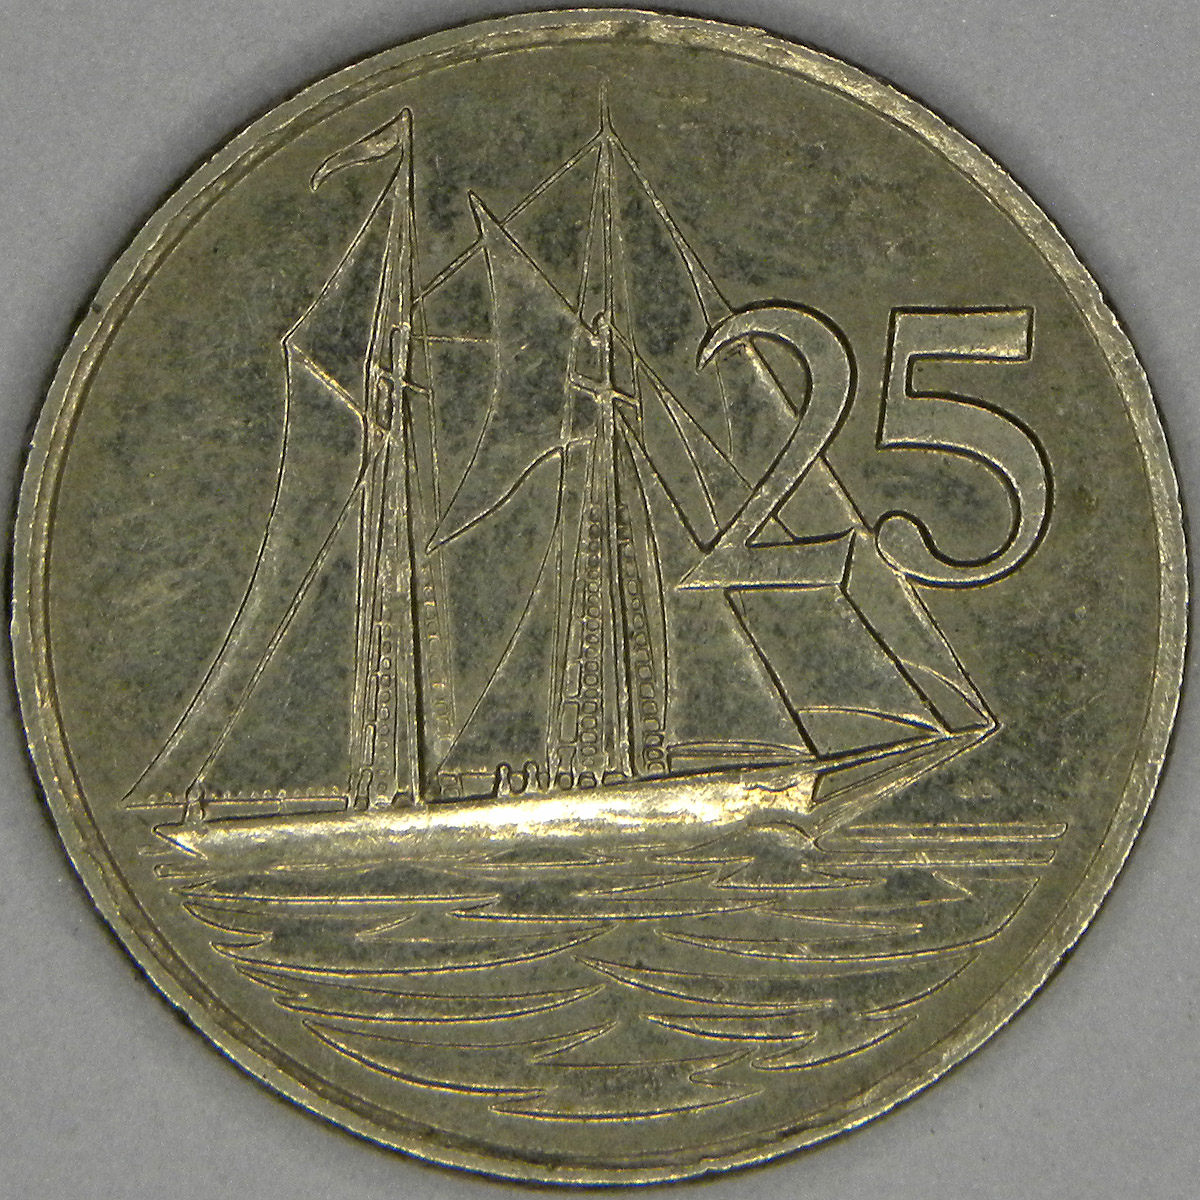 1990 Cayman Islands 25 cent coin (reverse)